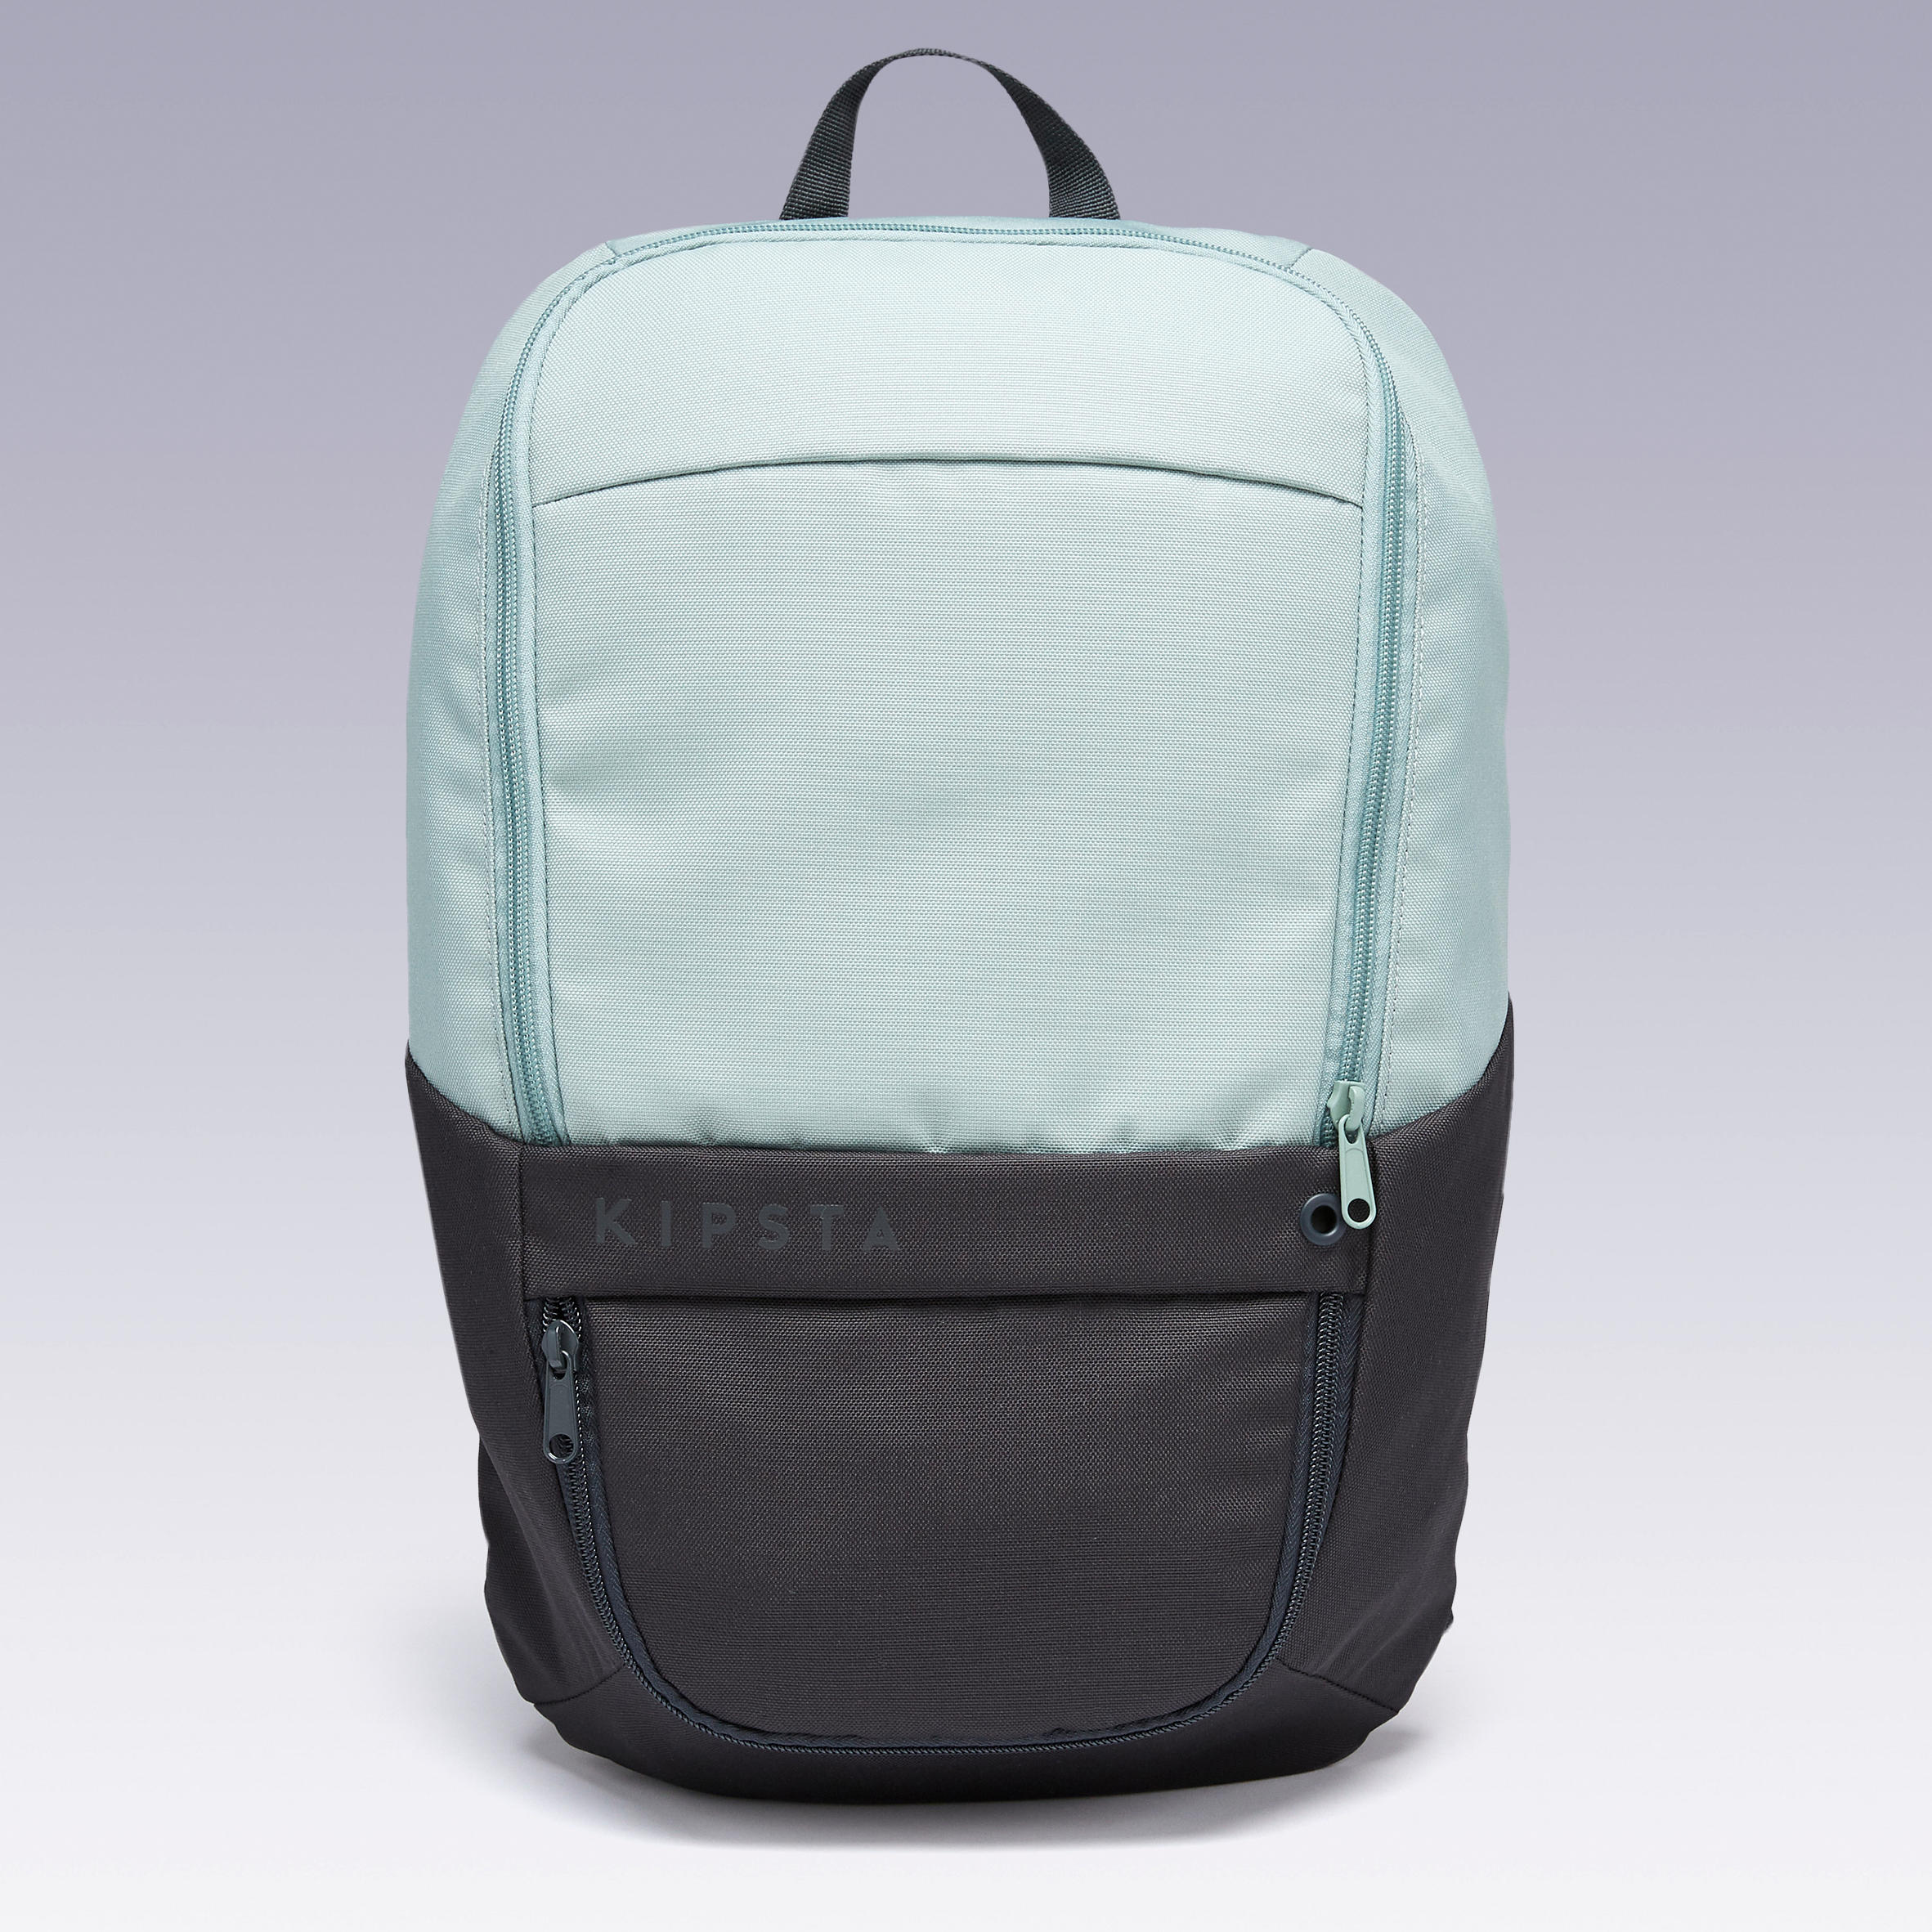 Sac A Dos Denim Backpack – Keeks Designer Handbags